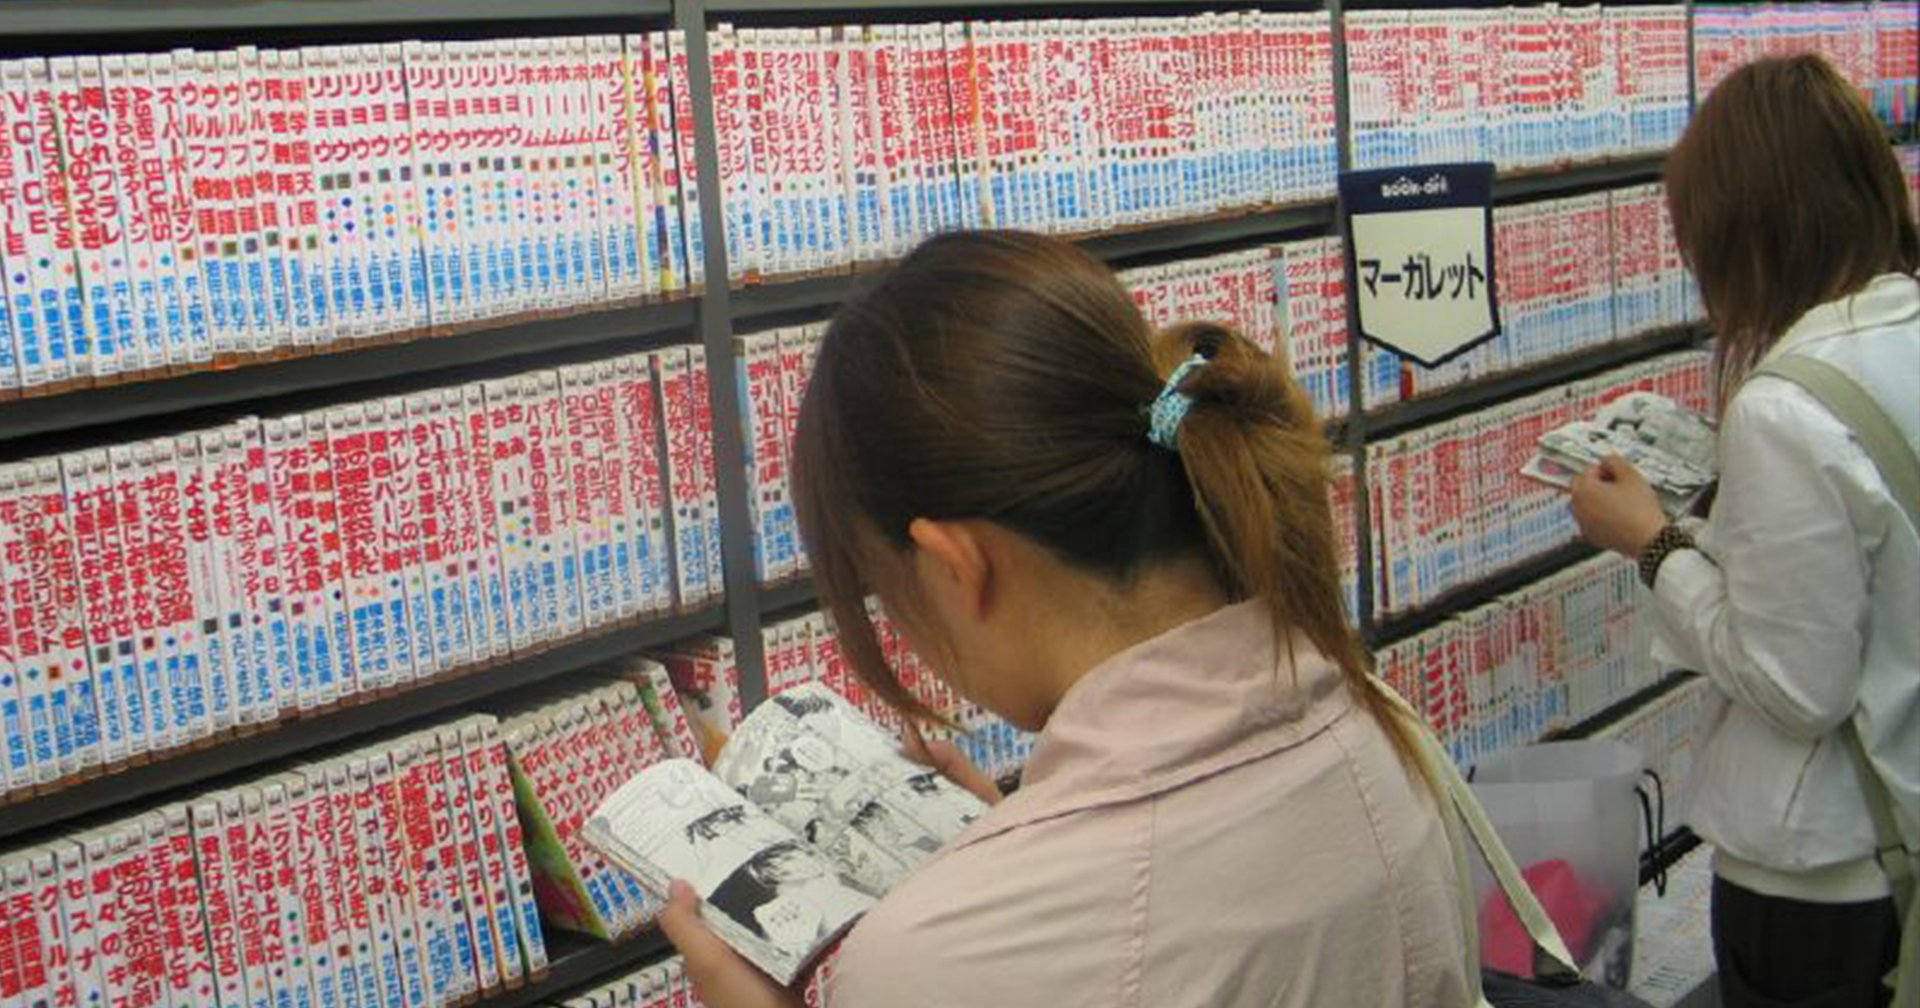 ‘มาริโกะ อาโอกิ’ ปรากฏการณ์ปวดอึ ในร้านหนังสือ เป็นยังไงกันนะ ทำไมคนญี่ปุ่นสงสัยมานาน